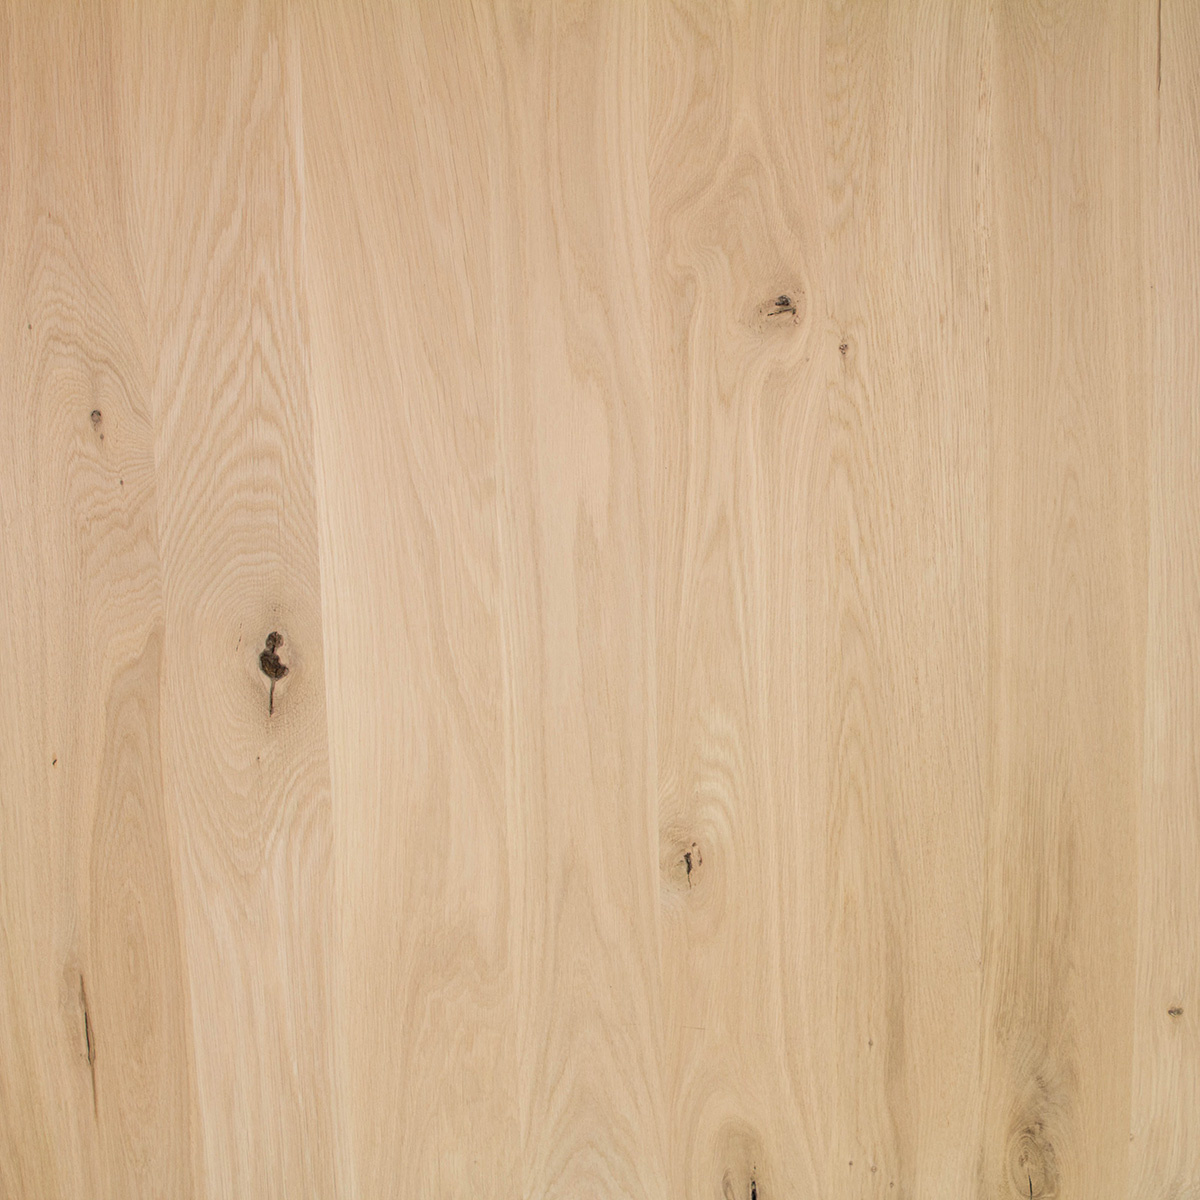  Arbeitsplatte Eiche massiv - 2 cm dick - 122 cm breit - verschiedene Längen - Eichenholz rustikal - Massivholz - Verleimt & künstlich getrocknet (HF 8-12%)